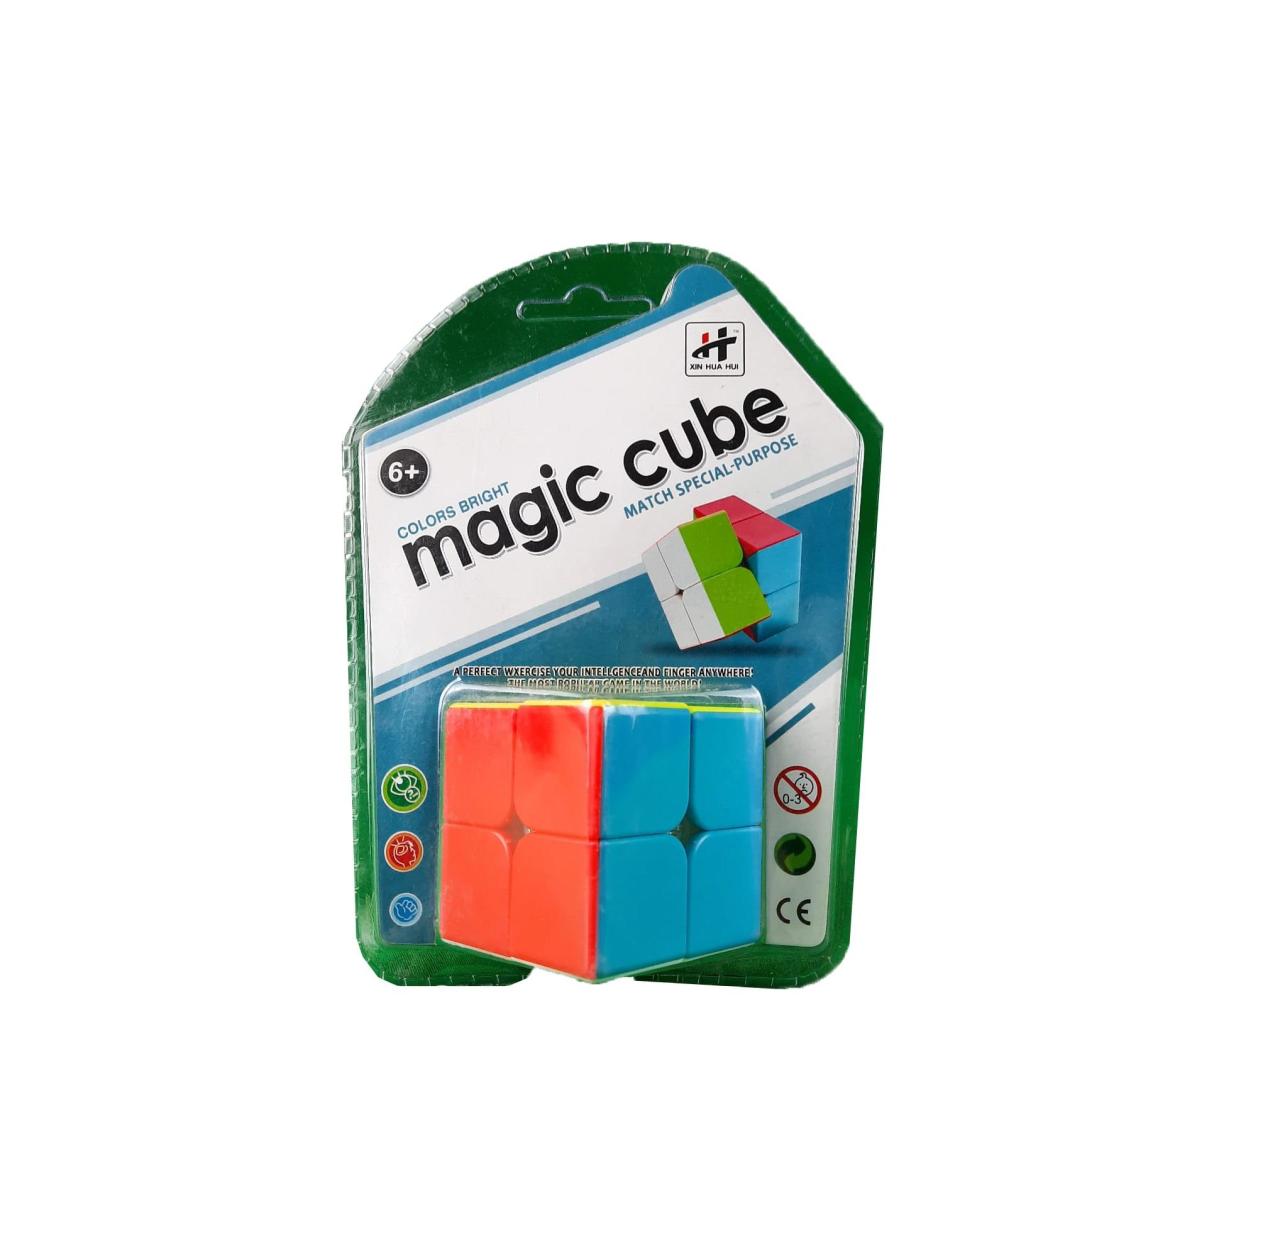 Acar Magic Cube Zeka Küpü 2X2 ACR-023